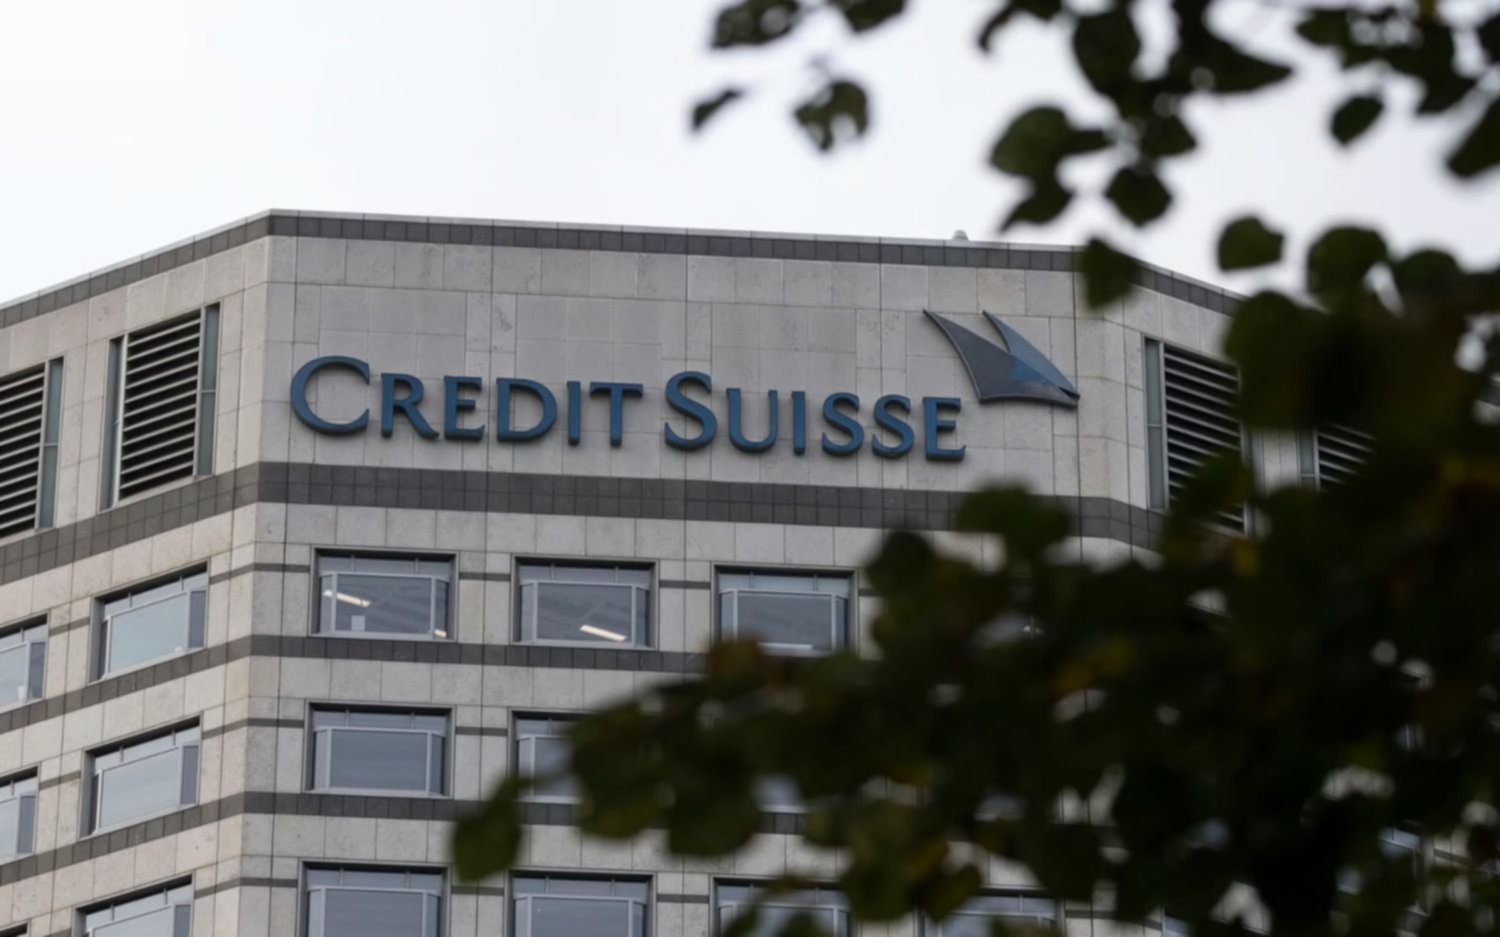 El banco Credit Suisse vuelve a caer con fuerza y hay incertidumbre en los mercados